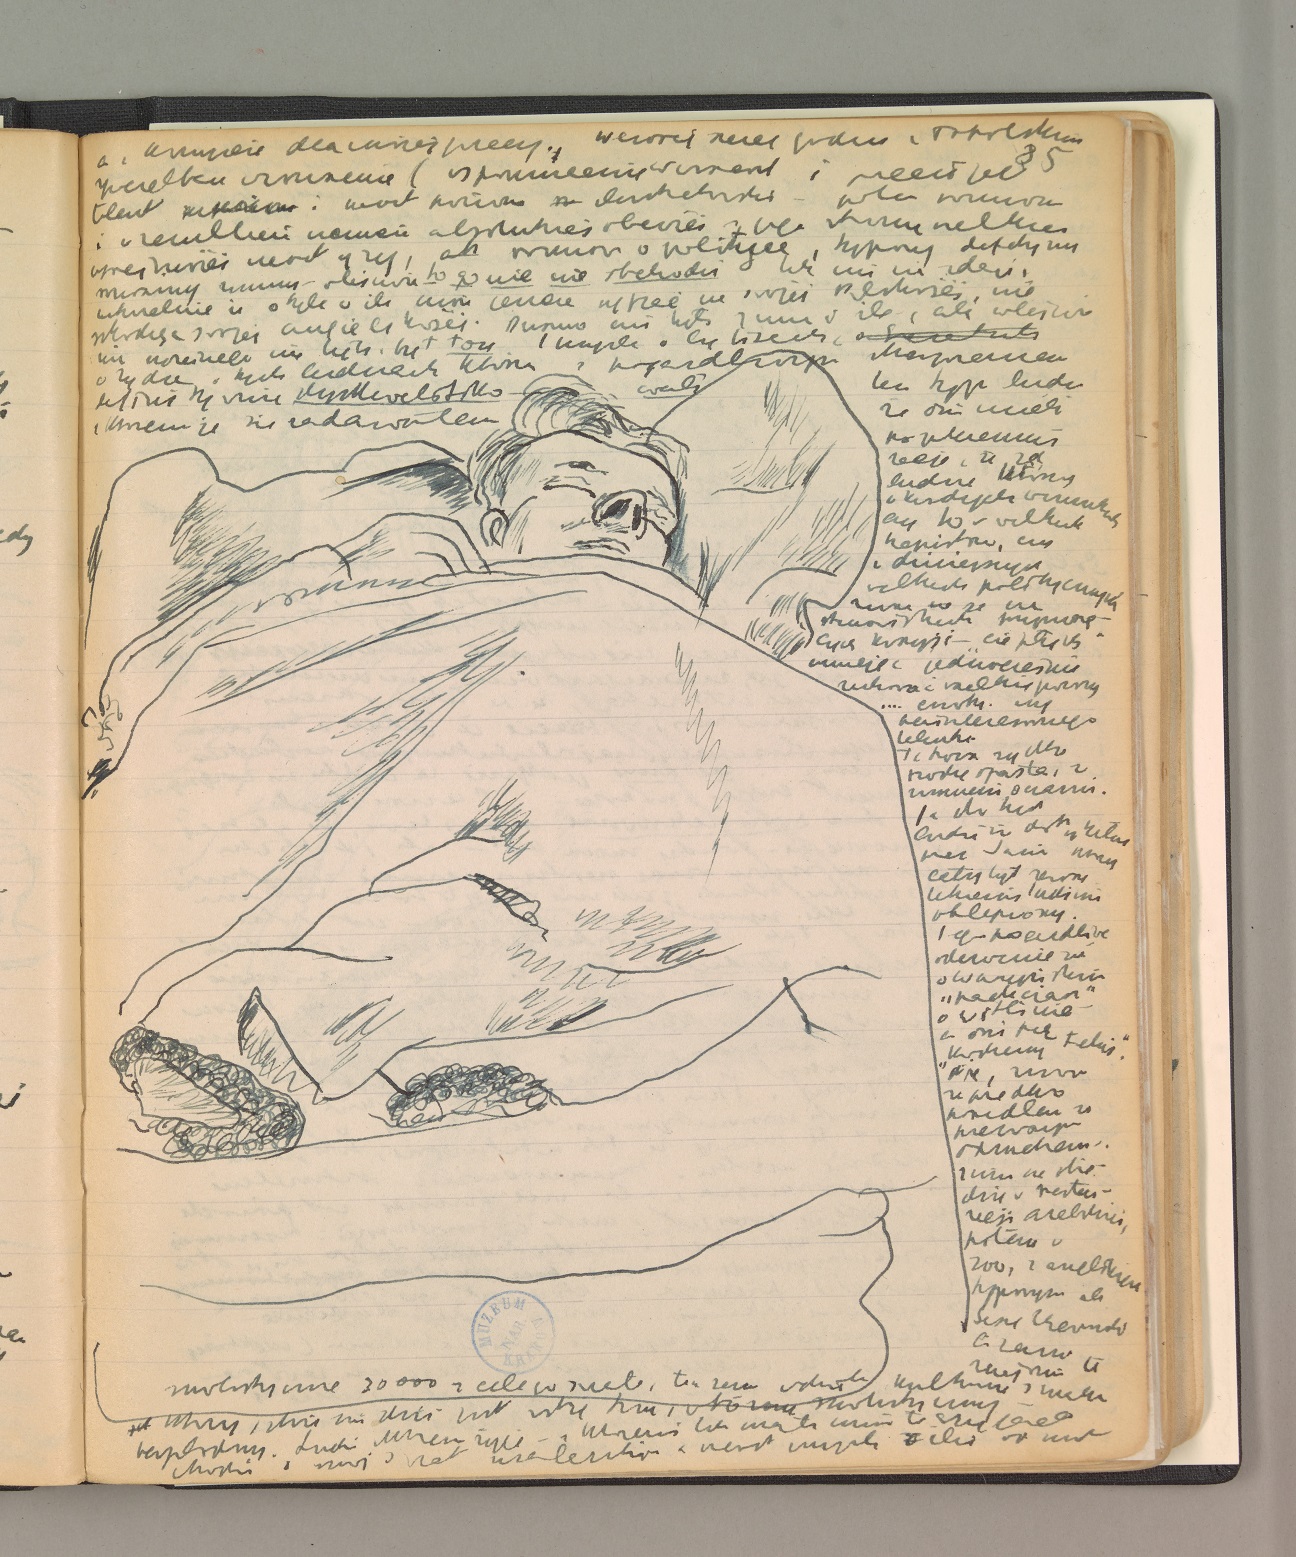 Strona częściwo zapisana drobnym pismem. Po środku rysunek śpiącego mężczyzny pod kocem.